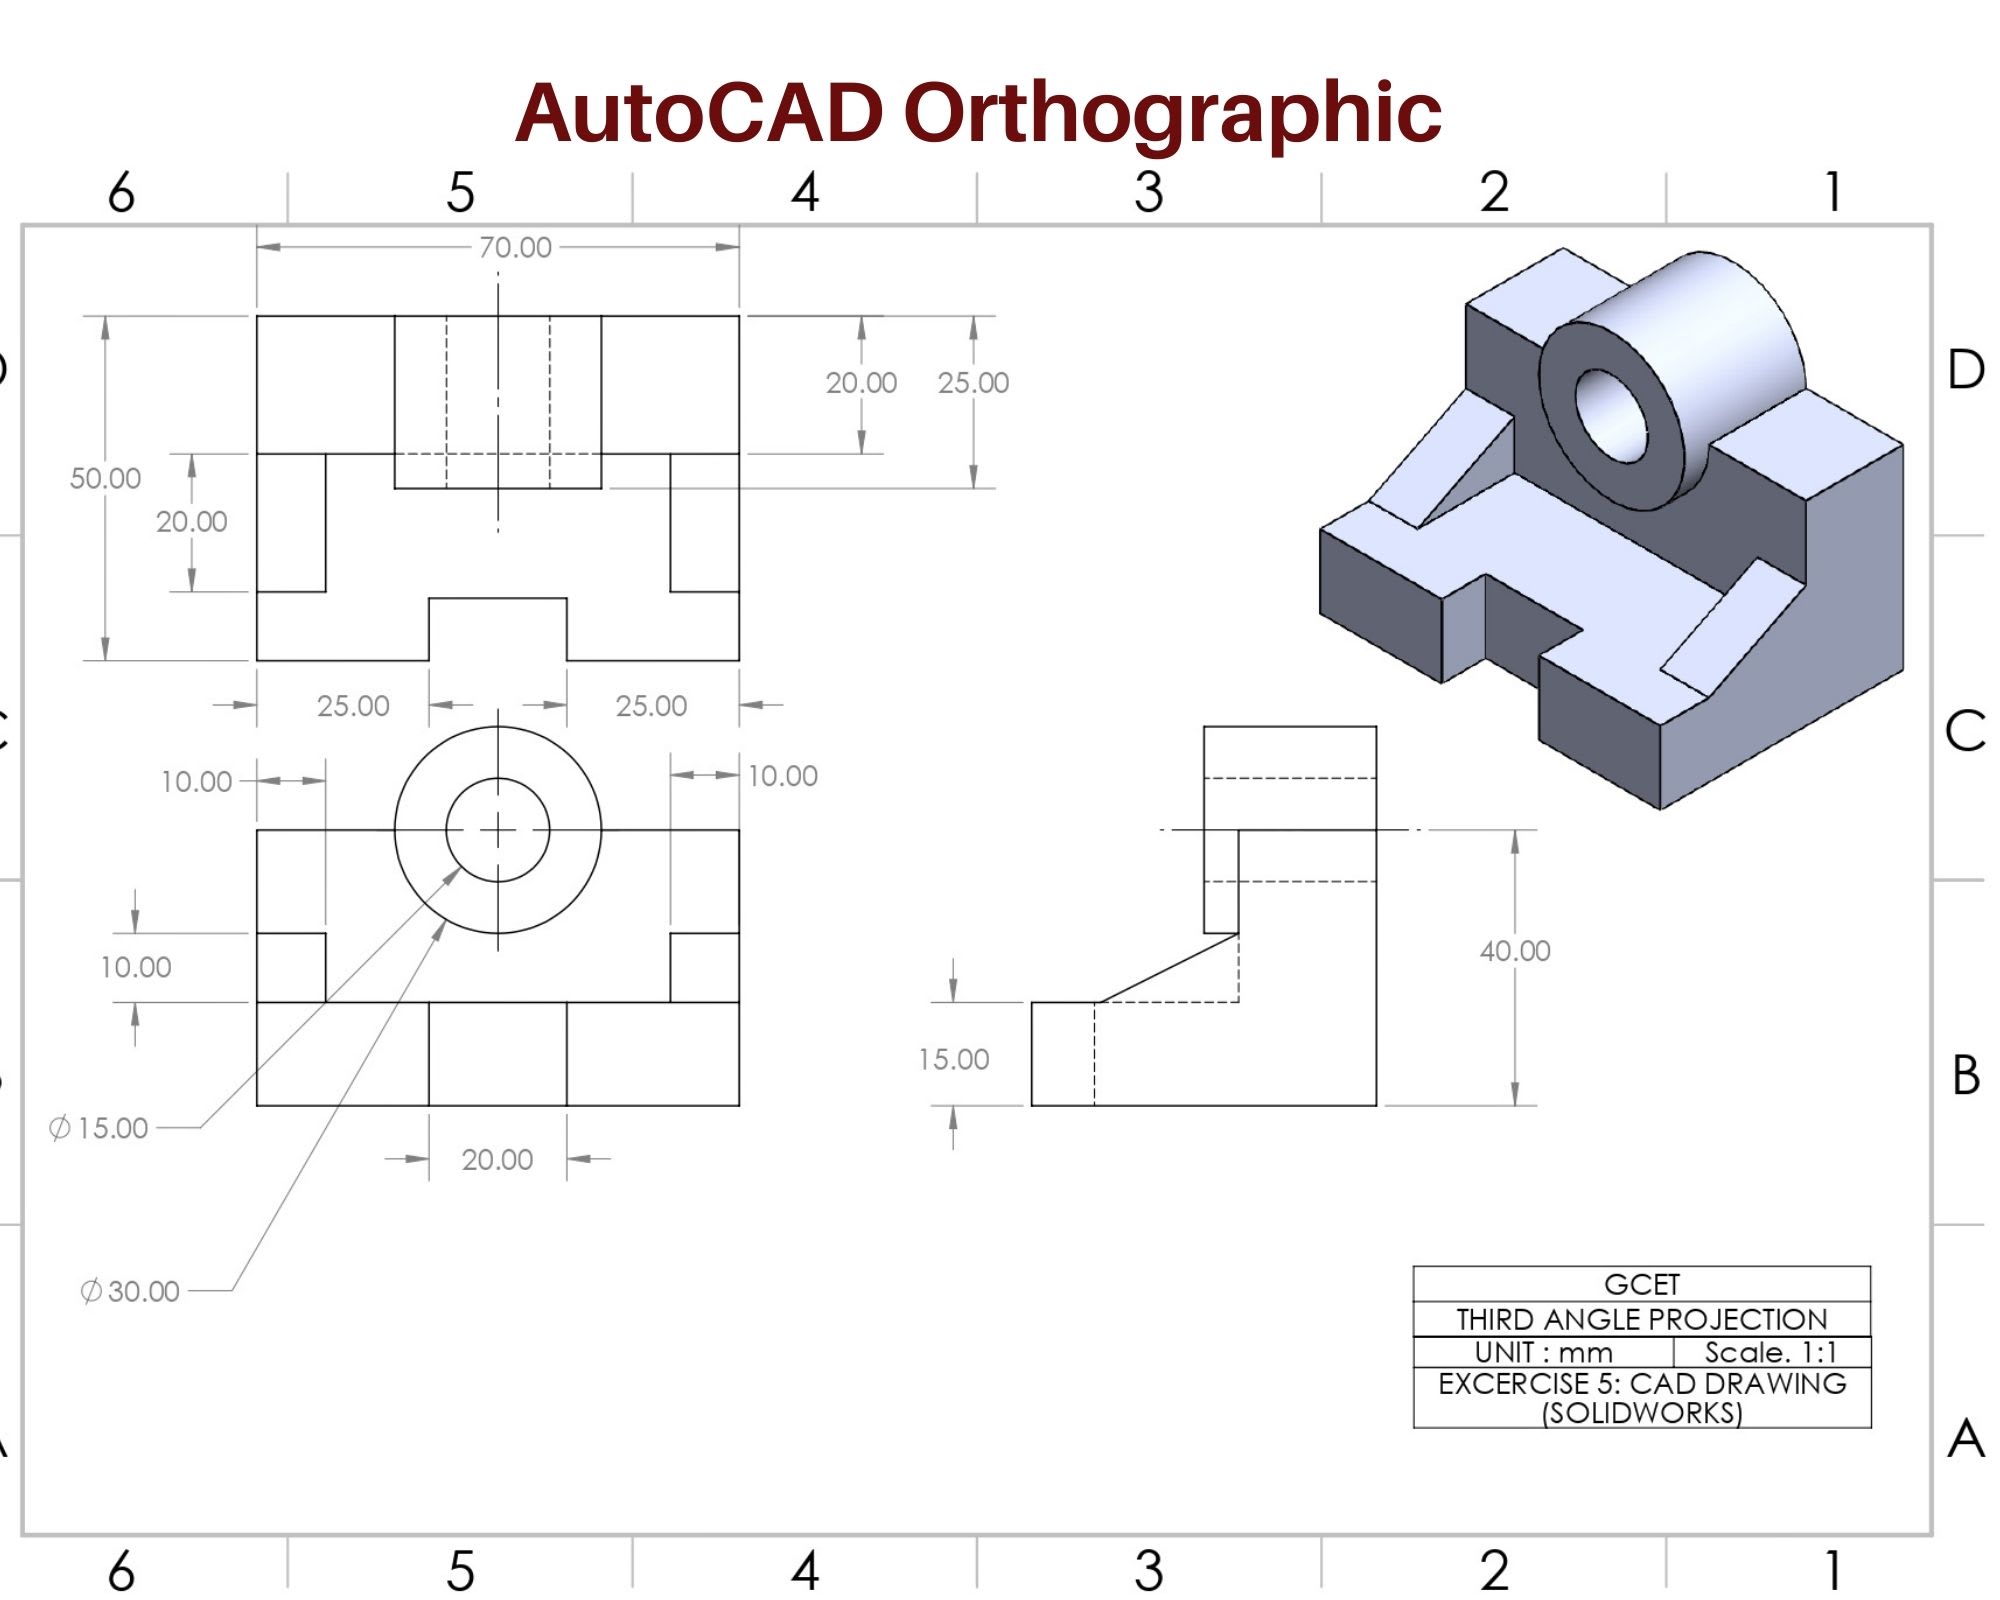 Vẽ bản vẽ cơ khí 2D, 3D sử dụng AutoCAD và Inventor: Sử dụng AutoCAD và Inventor để vẽ bản vẽ cơ khí 2D, 3D chưa bao giờ dễ dàng đến thế. Giao diện thân thiện và tính năng mạnh mẽ của hai phần mềm này sẽ giúp bạn thiết kế một cách nhanh chóng và chính xác. Hãy trải nghiệm và khám phá thế giới cơ khí với AutoCAD và Inventor.